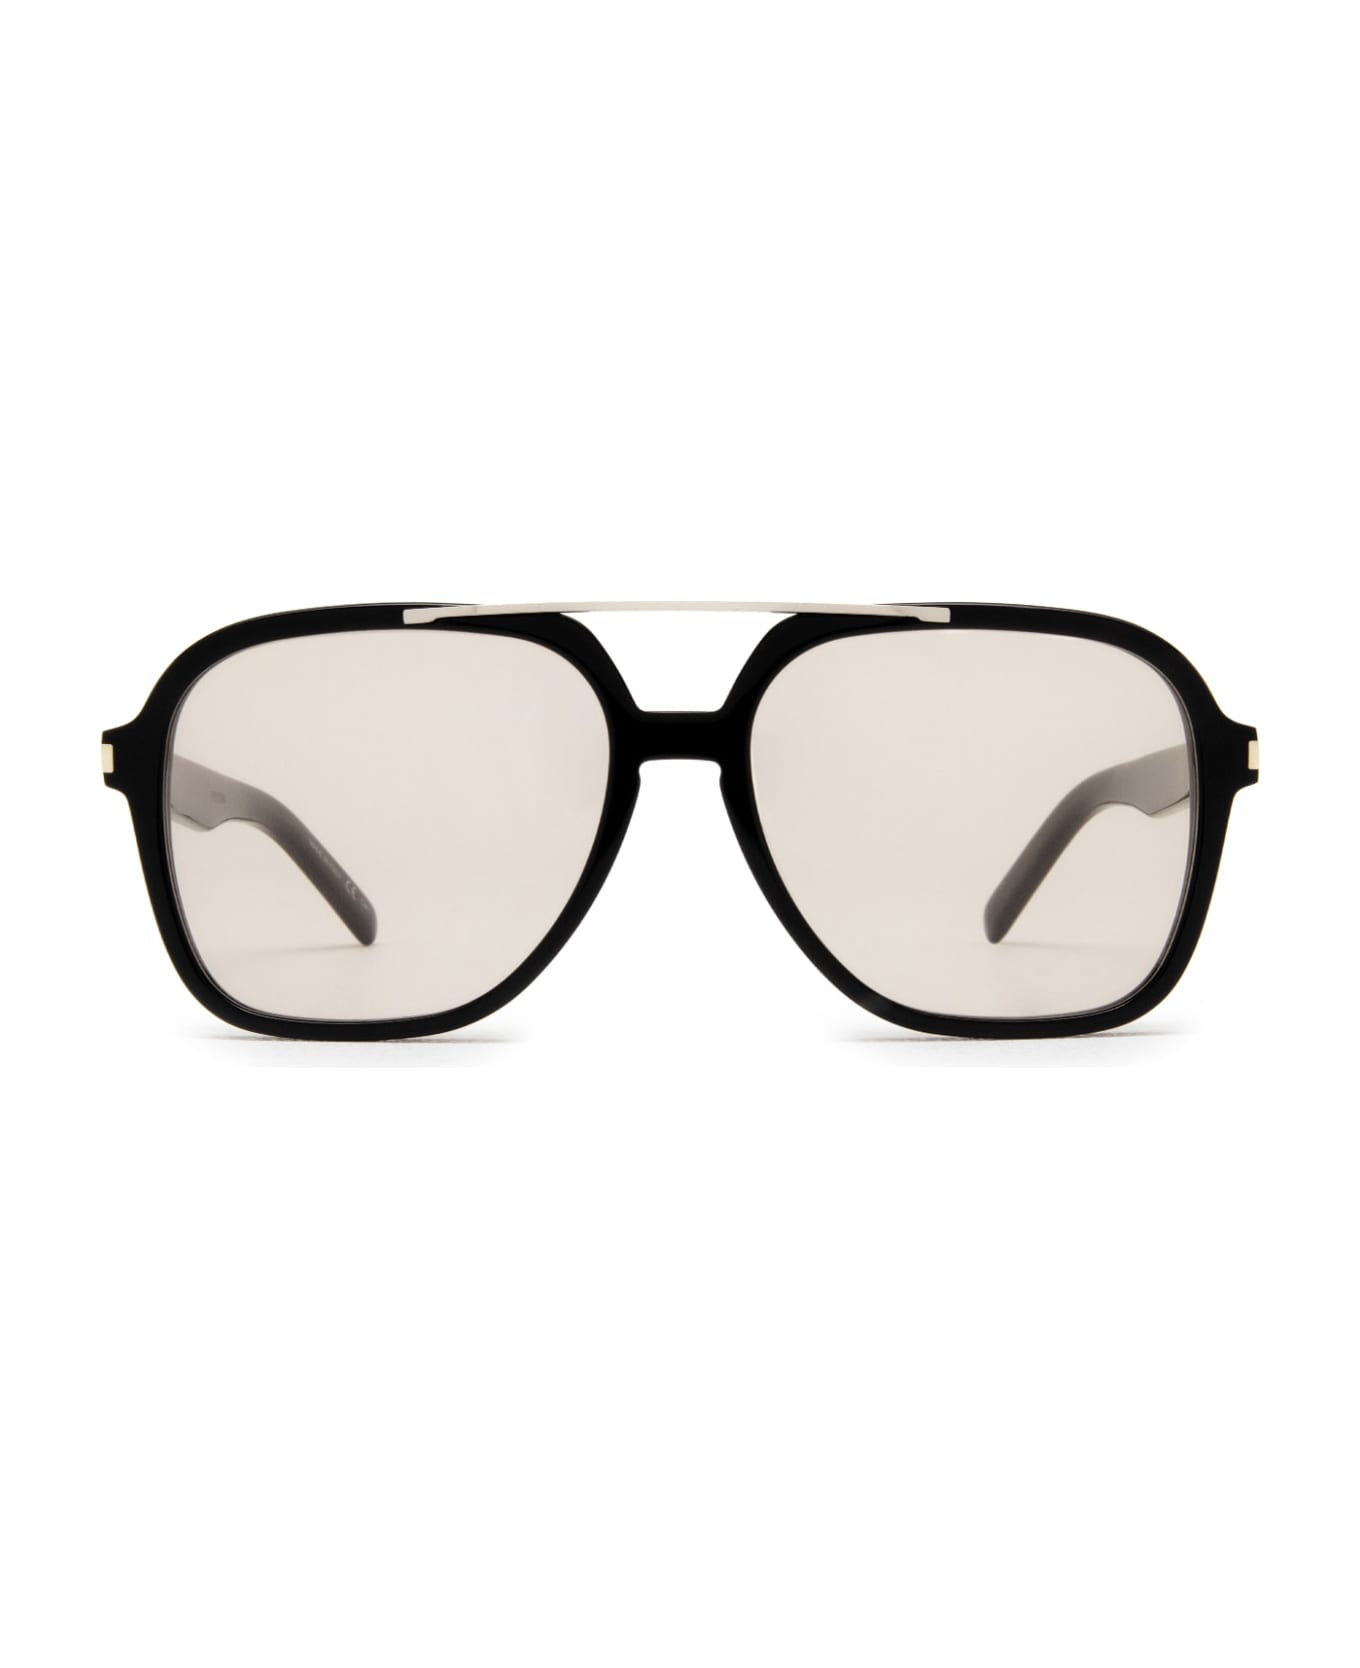 Saint Laurent Eyewear Sl 545 Black Sunglasses - Black